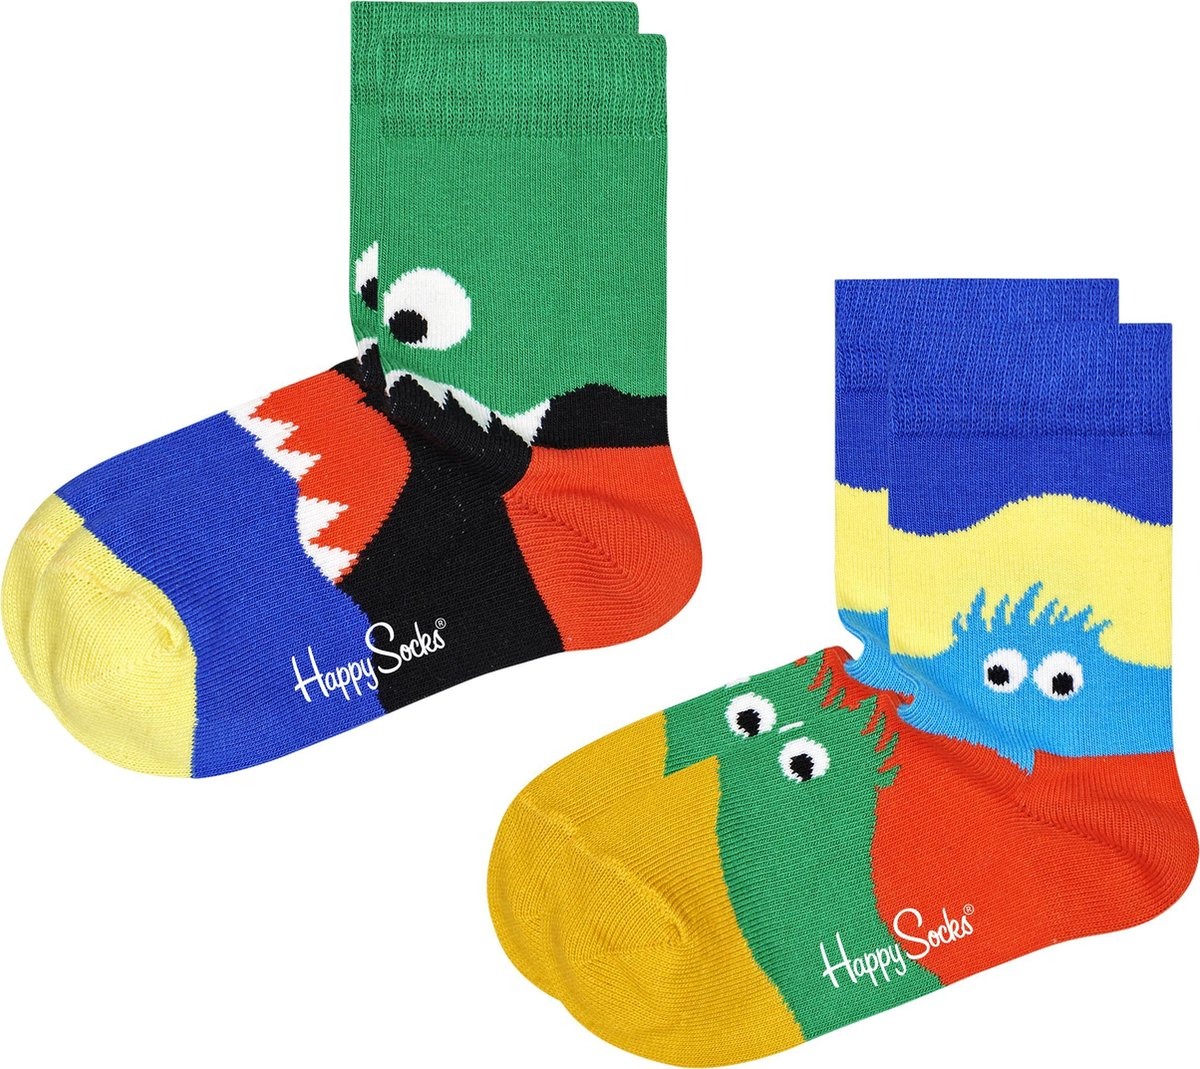 Gevlekt Encyclopedie Skalk Happy Socks - 2-pack Kids Monsters Socks maat 4-6 jaar (KMON02-0200) - Kids  - Blije voeten met Happy Socks